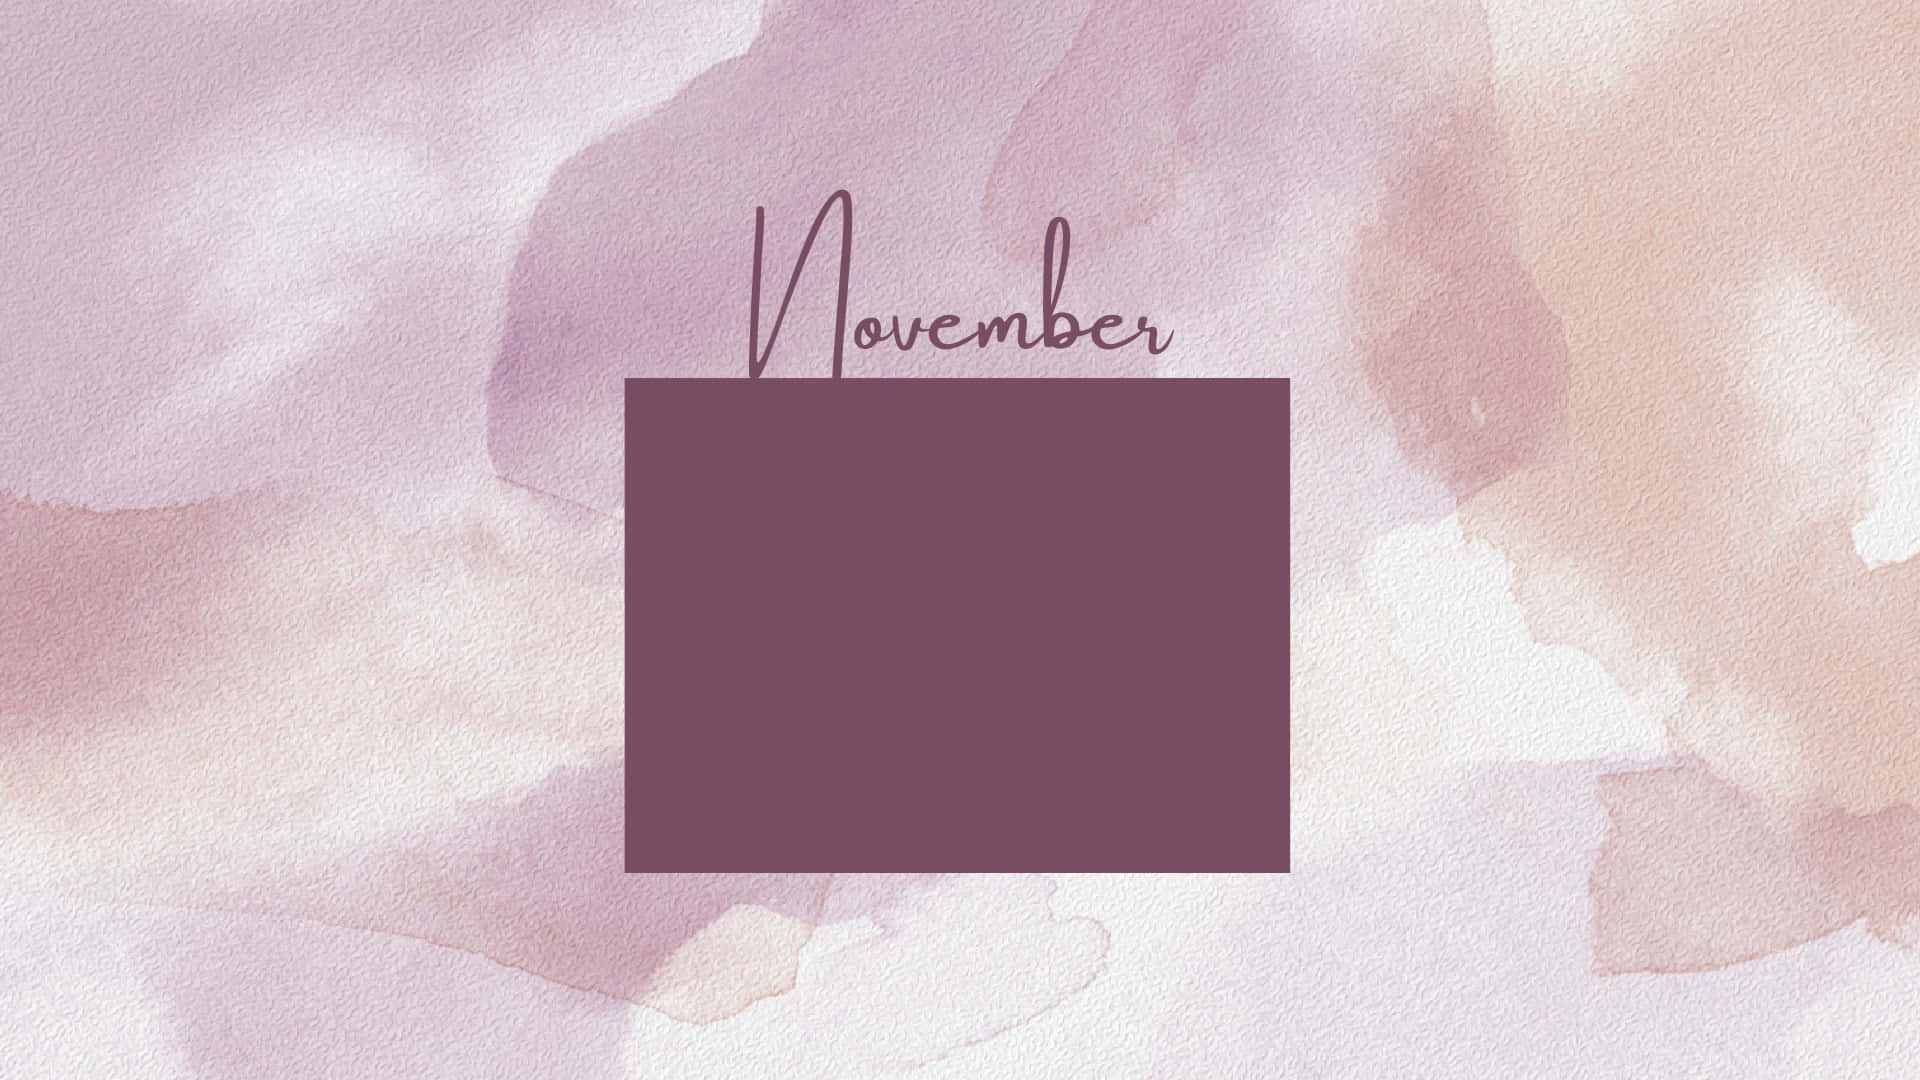 Aesthetic November Background Wallpaper